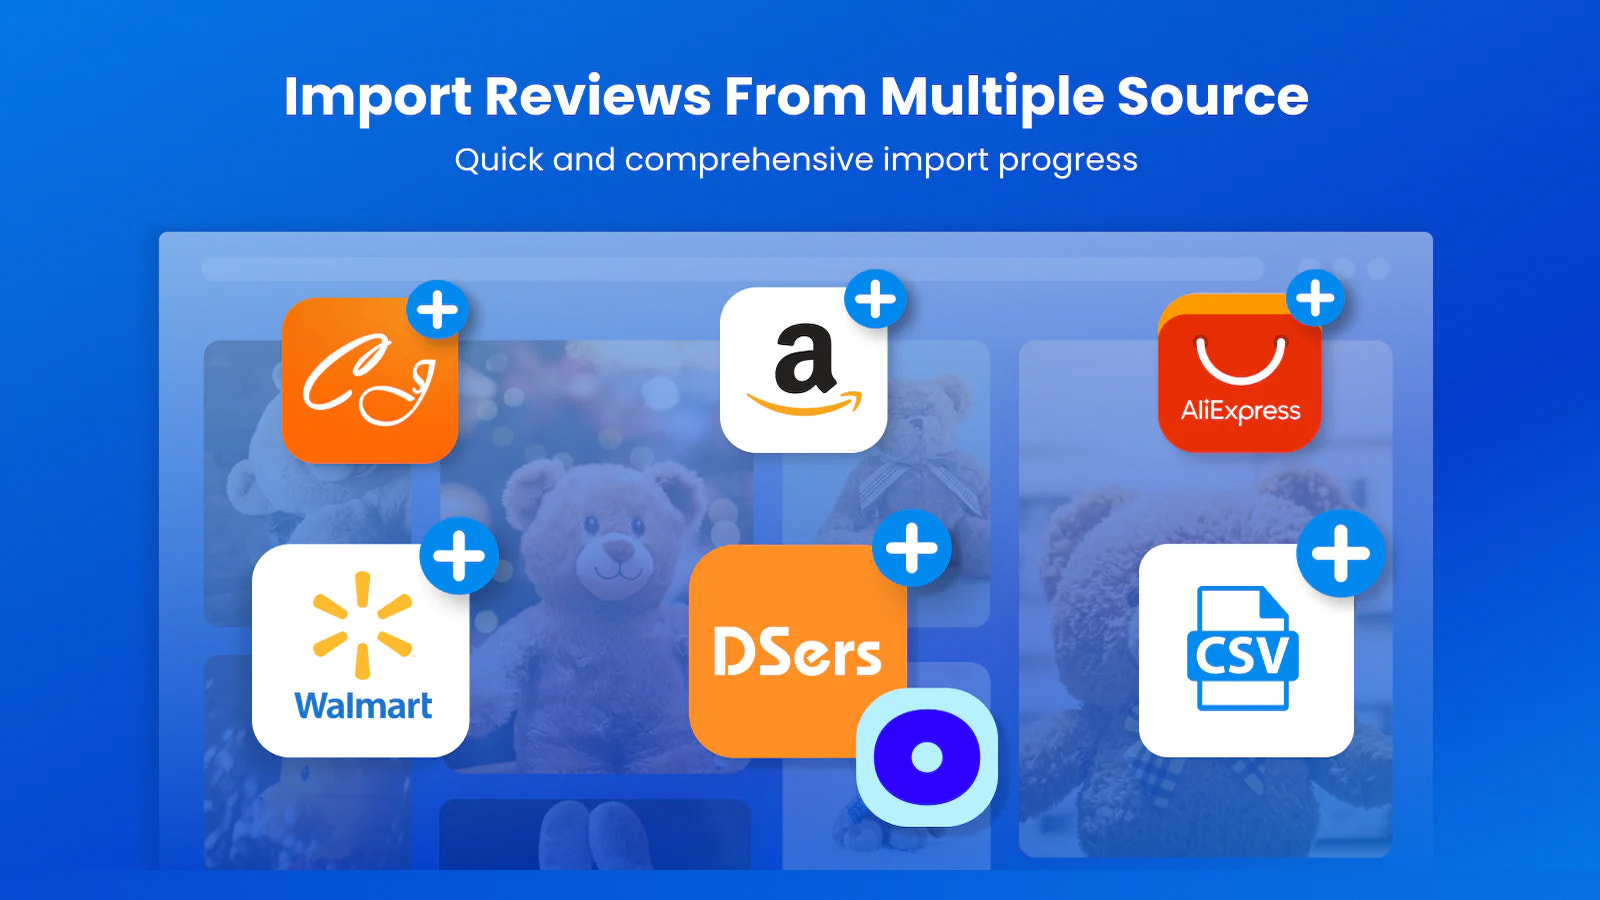 Amazon anmeldelser importør, AliExpress anmeldelse og andre kilder